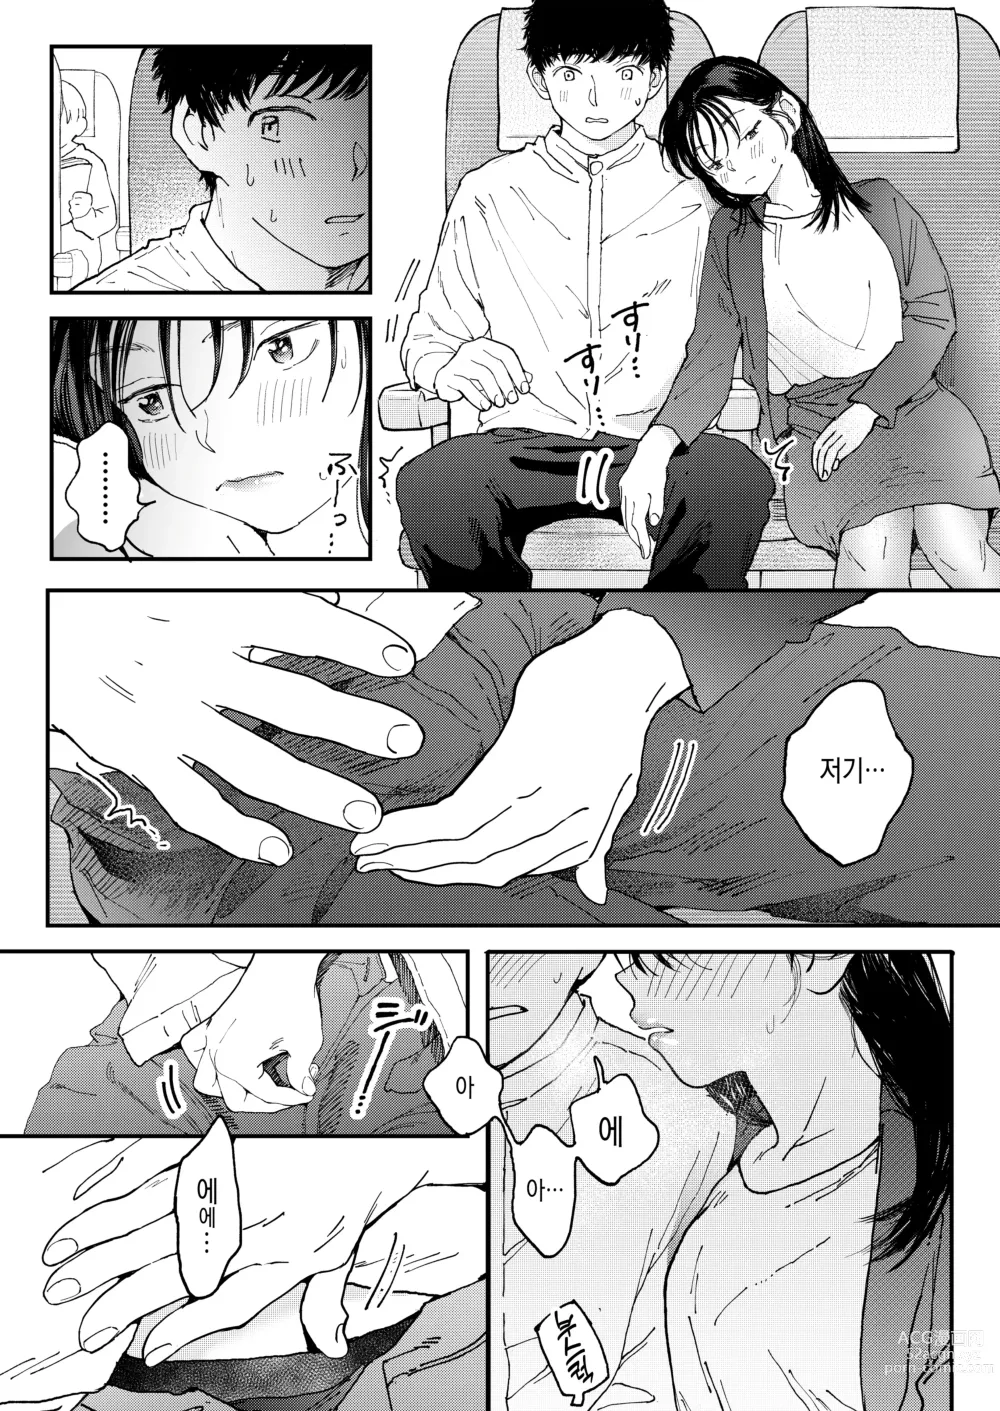 Page 17 of doujinshi 발정난 OL은 비행기 안에서도 성욕을 채우고 싶다